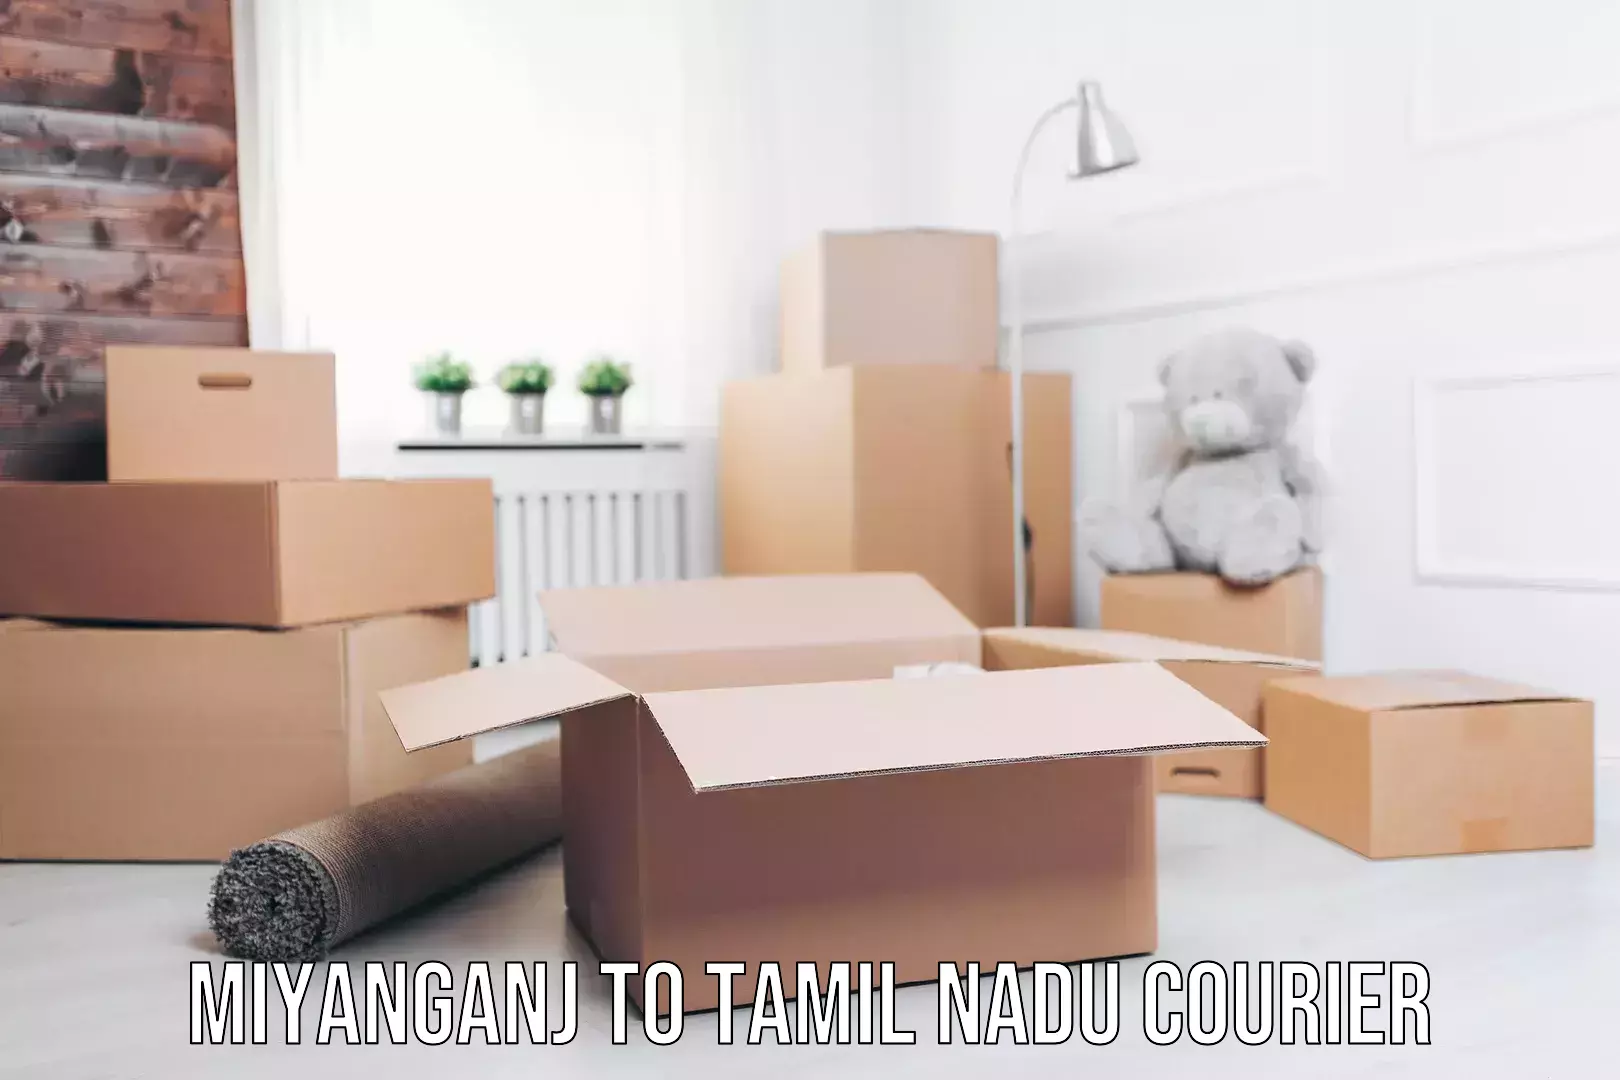 Professional furniture movers Miyanganj to Tamil Nadu